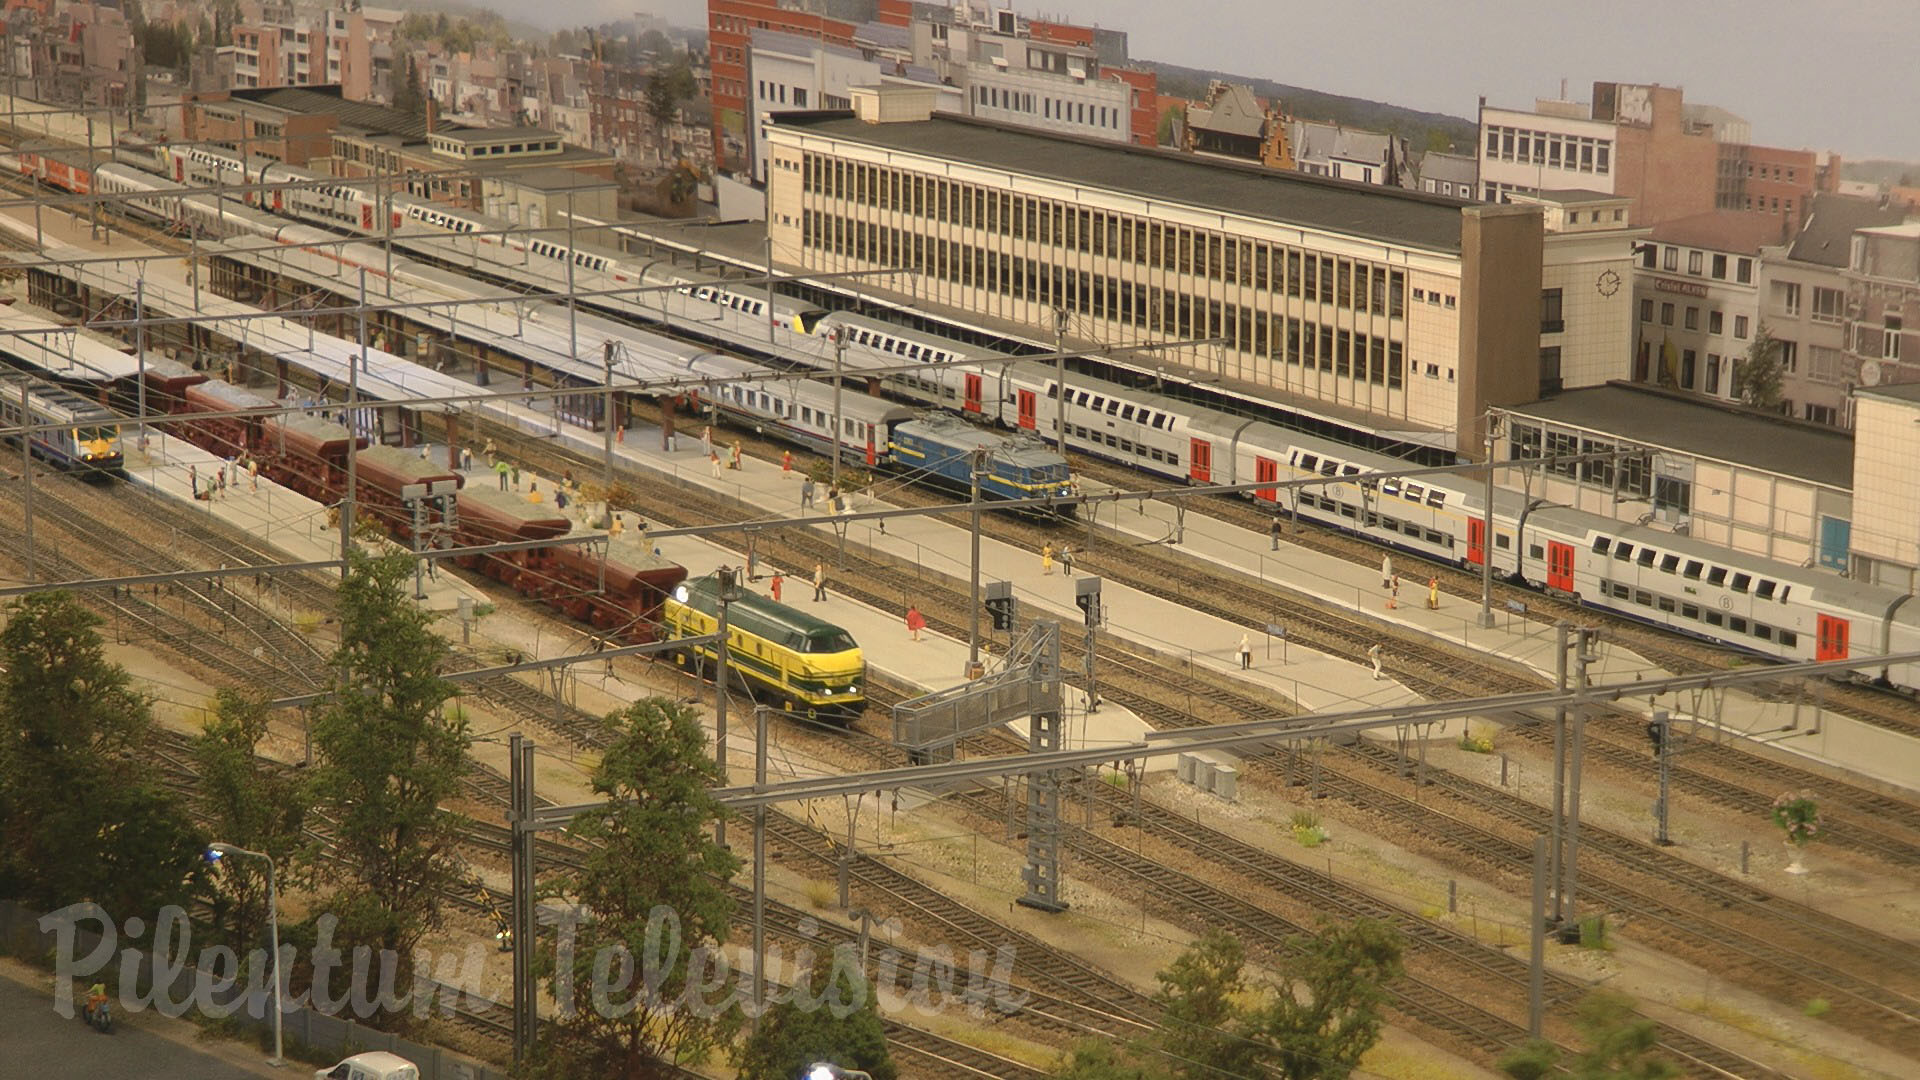 Modelbaan in België: Ivo Schrapen’s detailed replica of Hasselt railway station in HO Scale